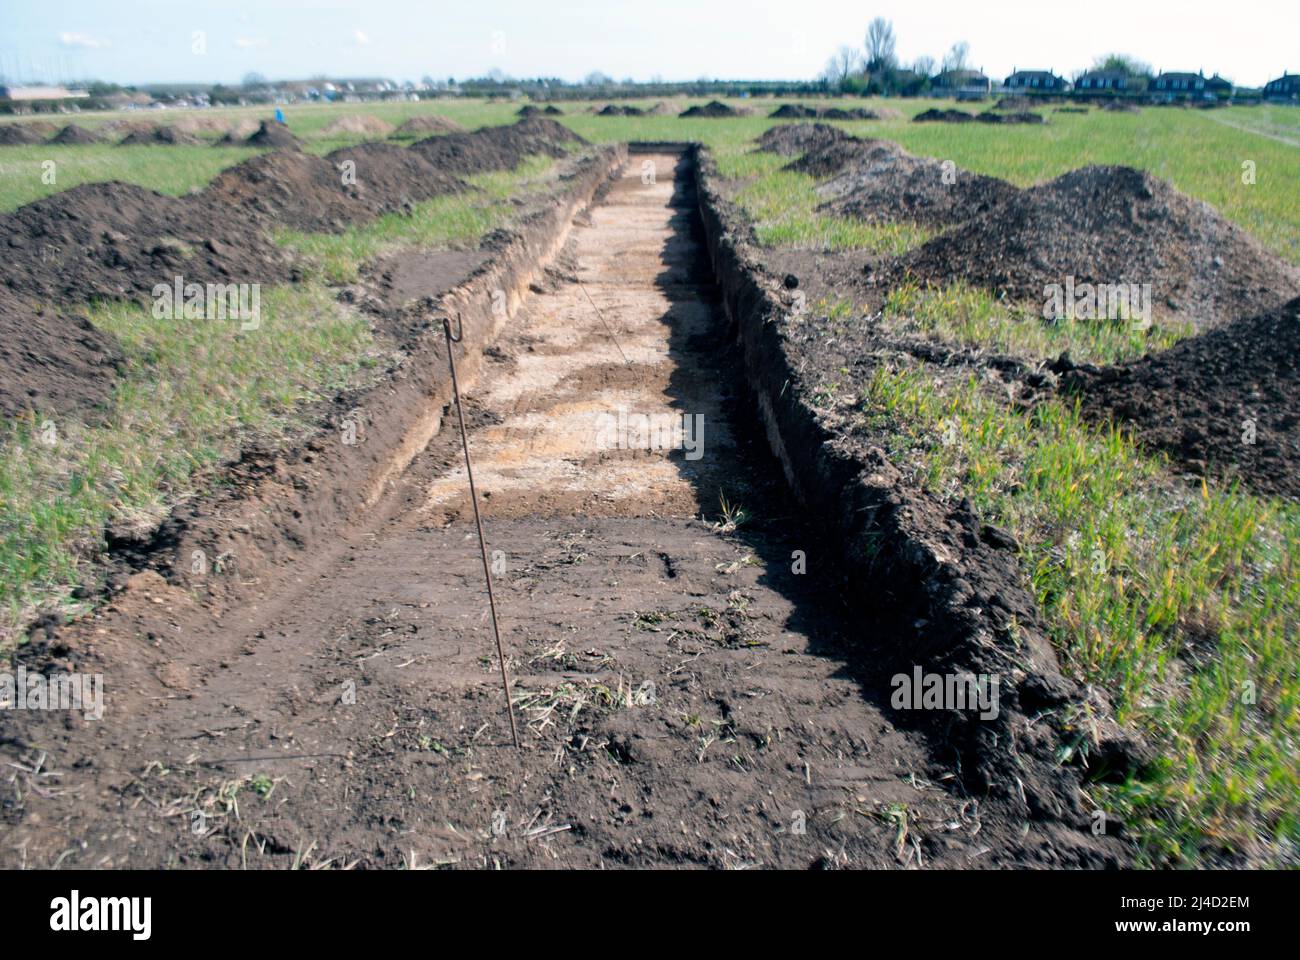 Trincheras excavadas en el campo para el estudio arqueológico junto al pueblo de Ruskington, Sleaford, Lincolnshire, Inglaterra, Reino Unido Foto de stock